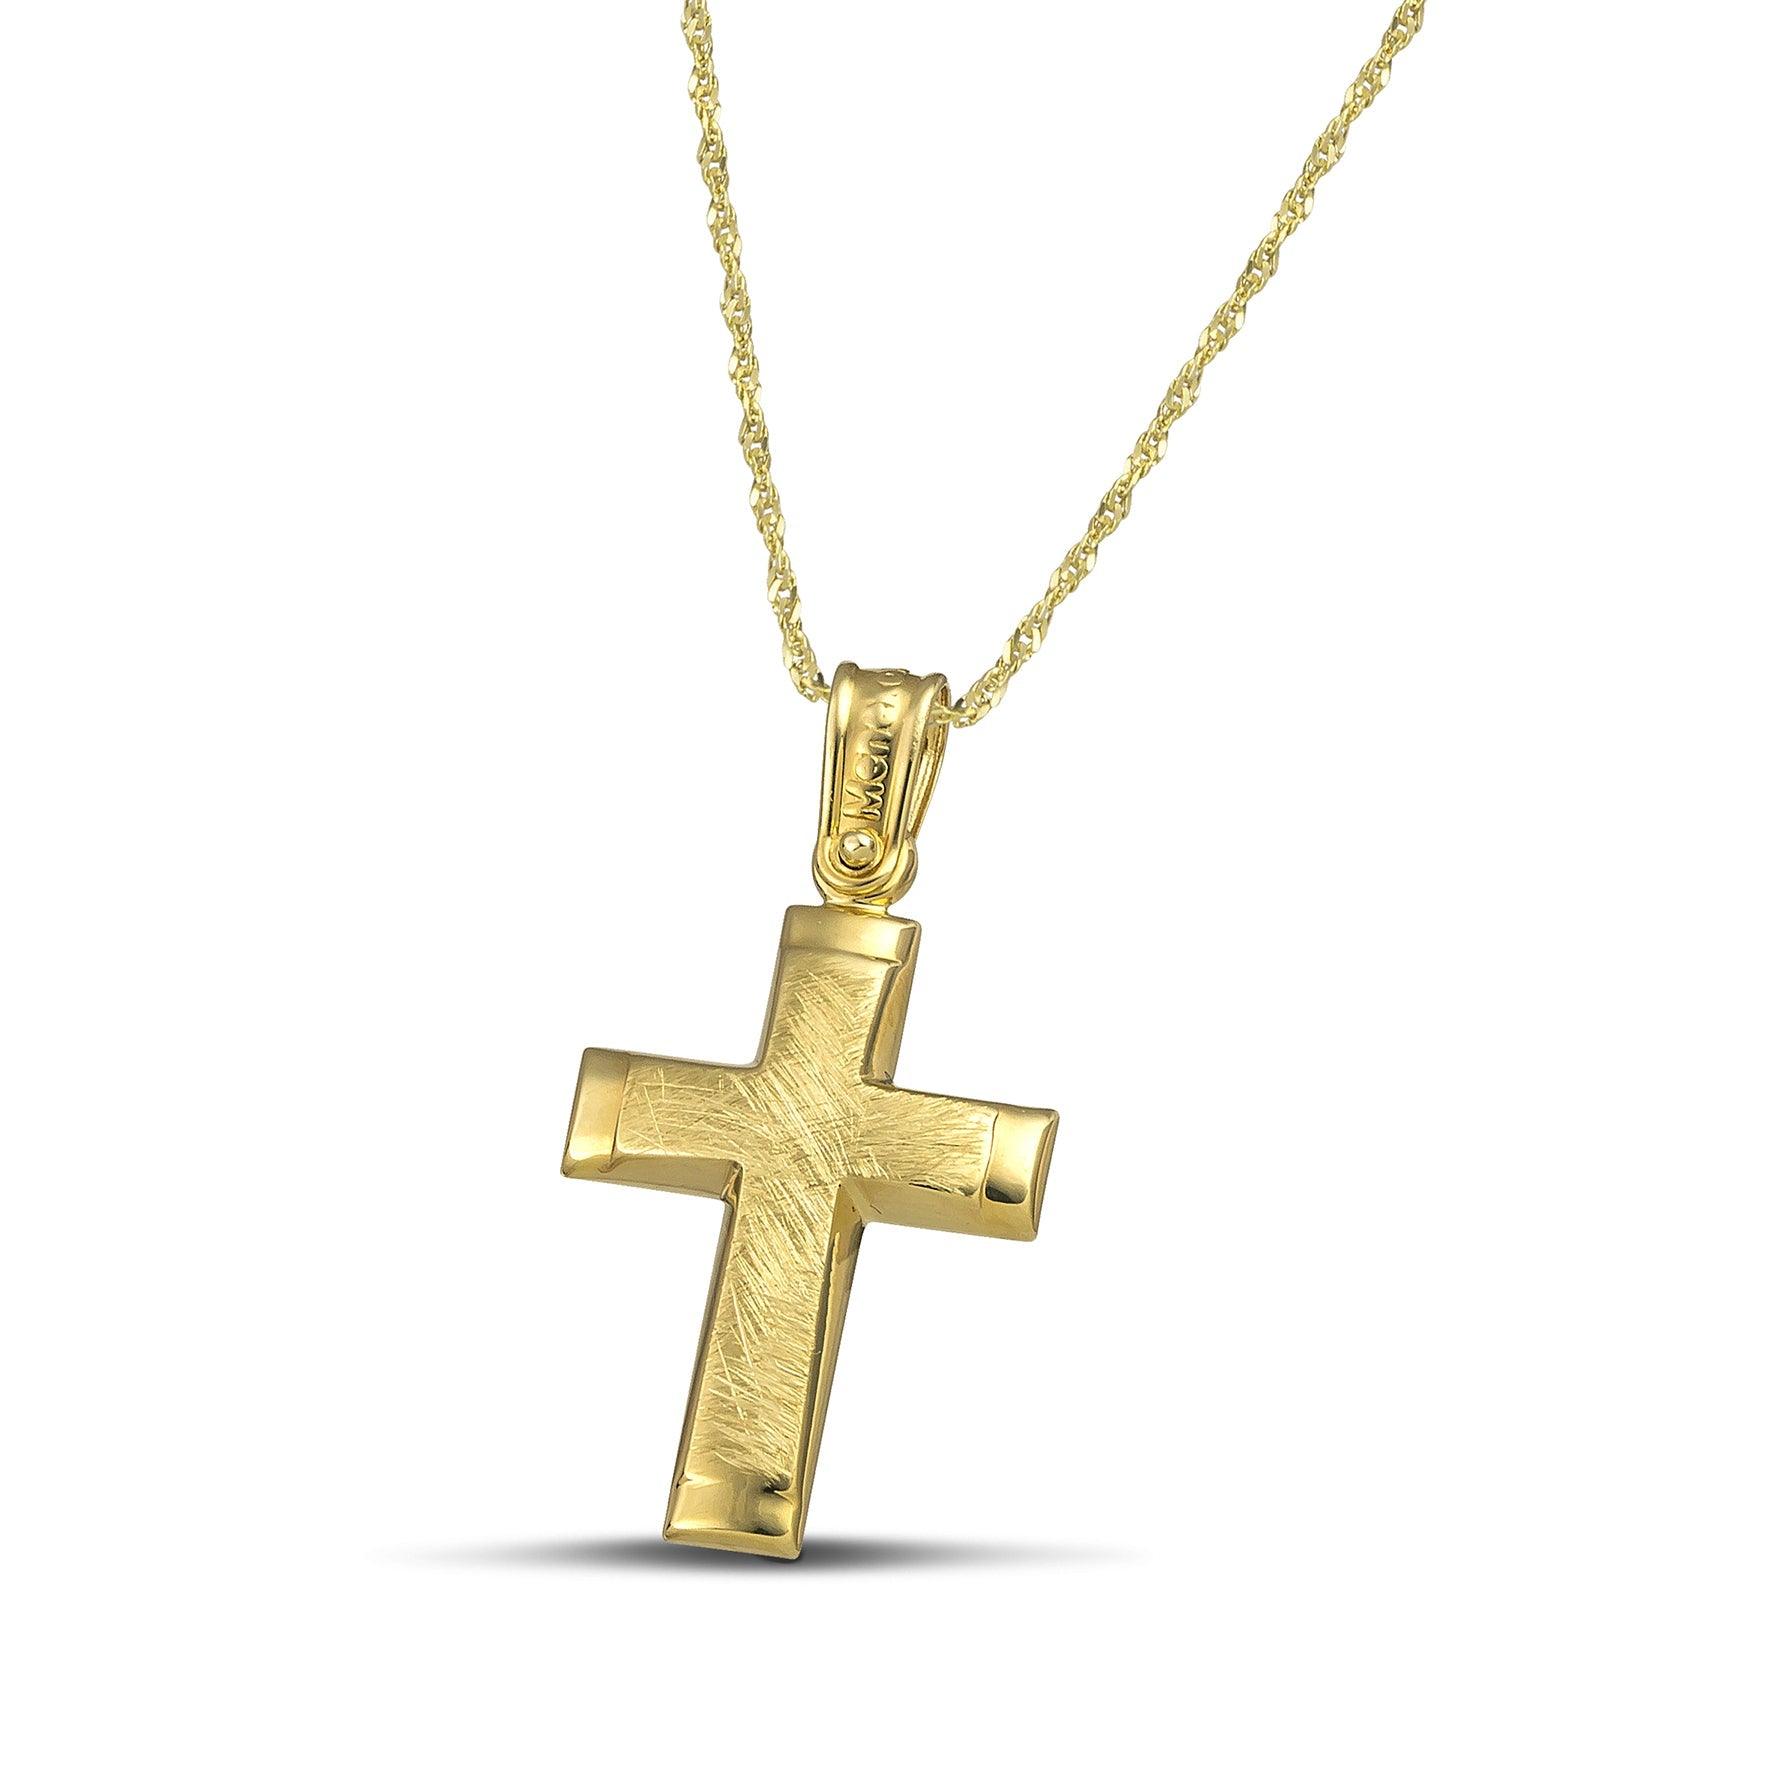 Μίνιμαλ γυναικείος σταυρός σαγρέ από χρυσό Κ14. Χειροποίητη πιστοποιημένη κατασκευή με λεπτή, στριφτή αλυσίδα.